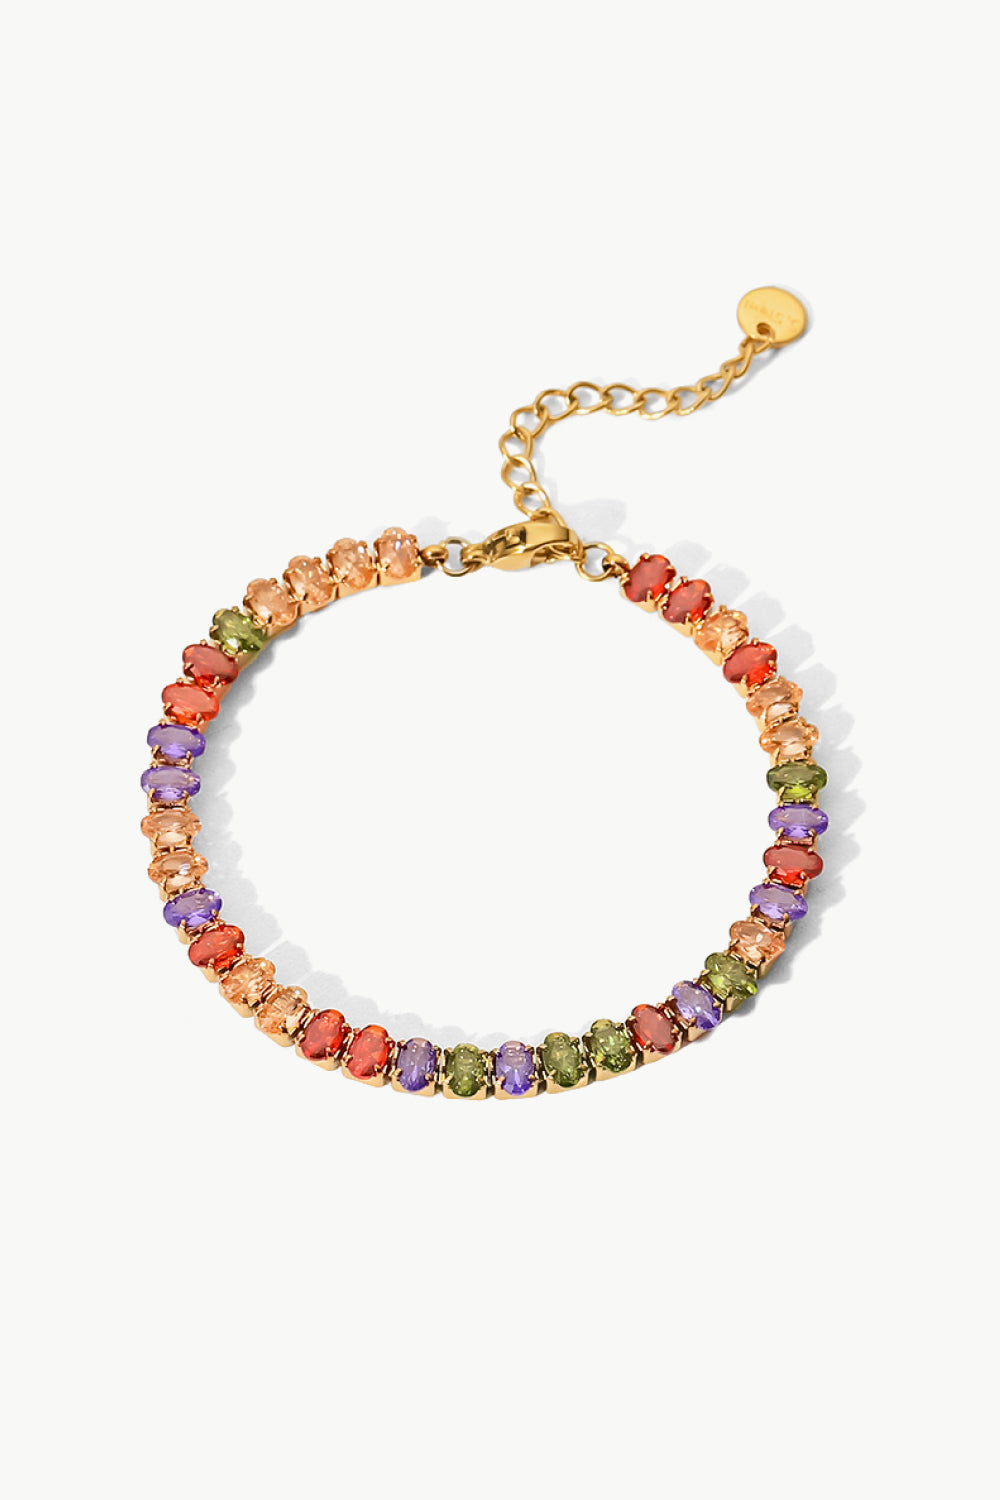 18K Gold Plated Multicolored Zircon Bracelet - Multicolored / One Size - Women’s Jewelry - Bracelets - 1 - 2024